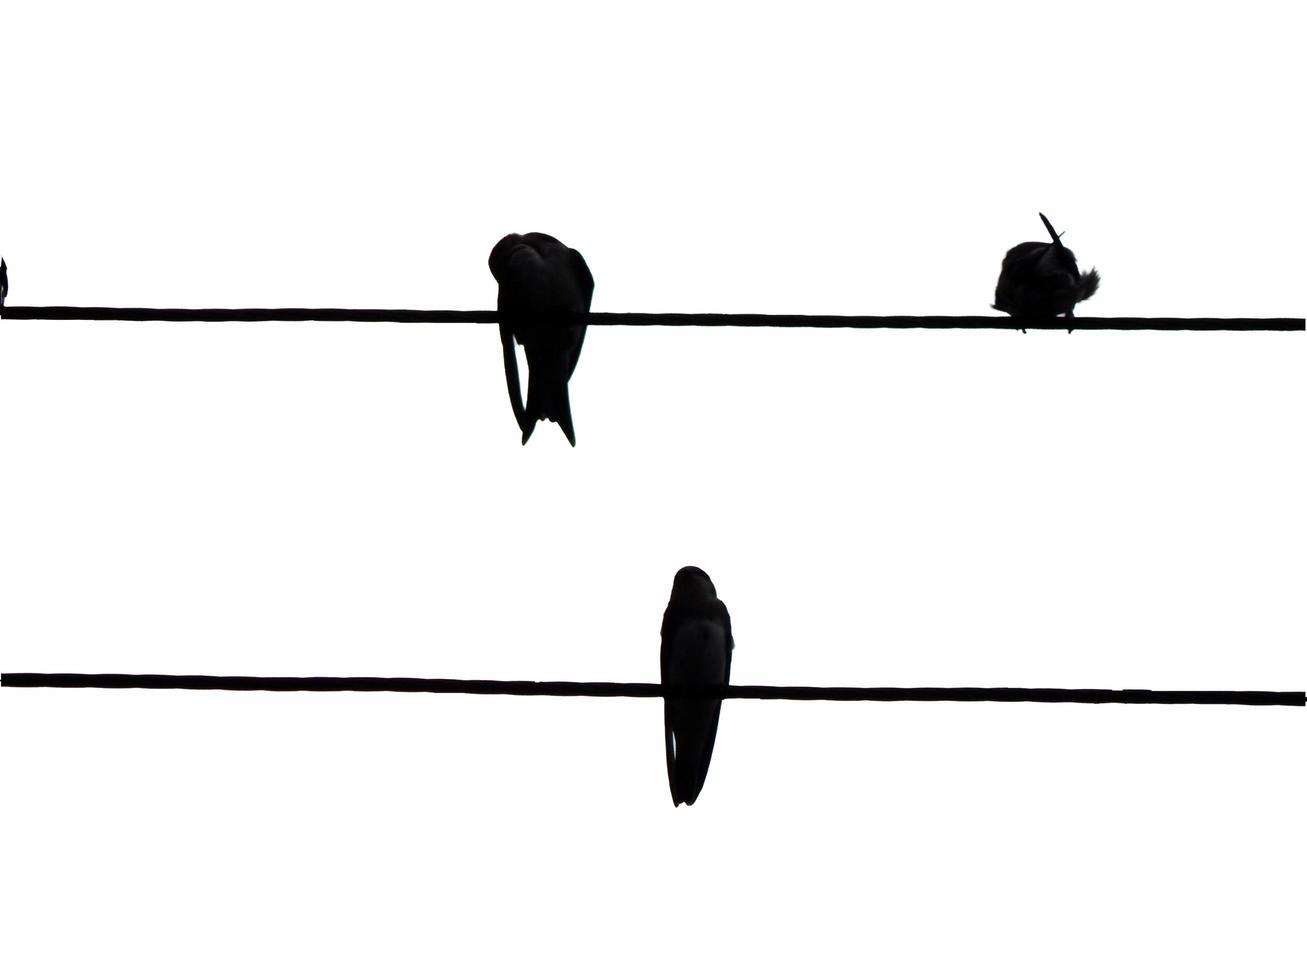 les oiseaux sont assis sur des fils électriques photo